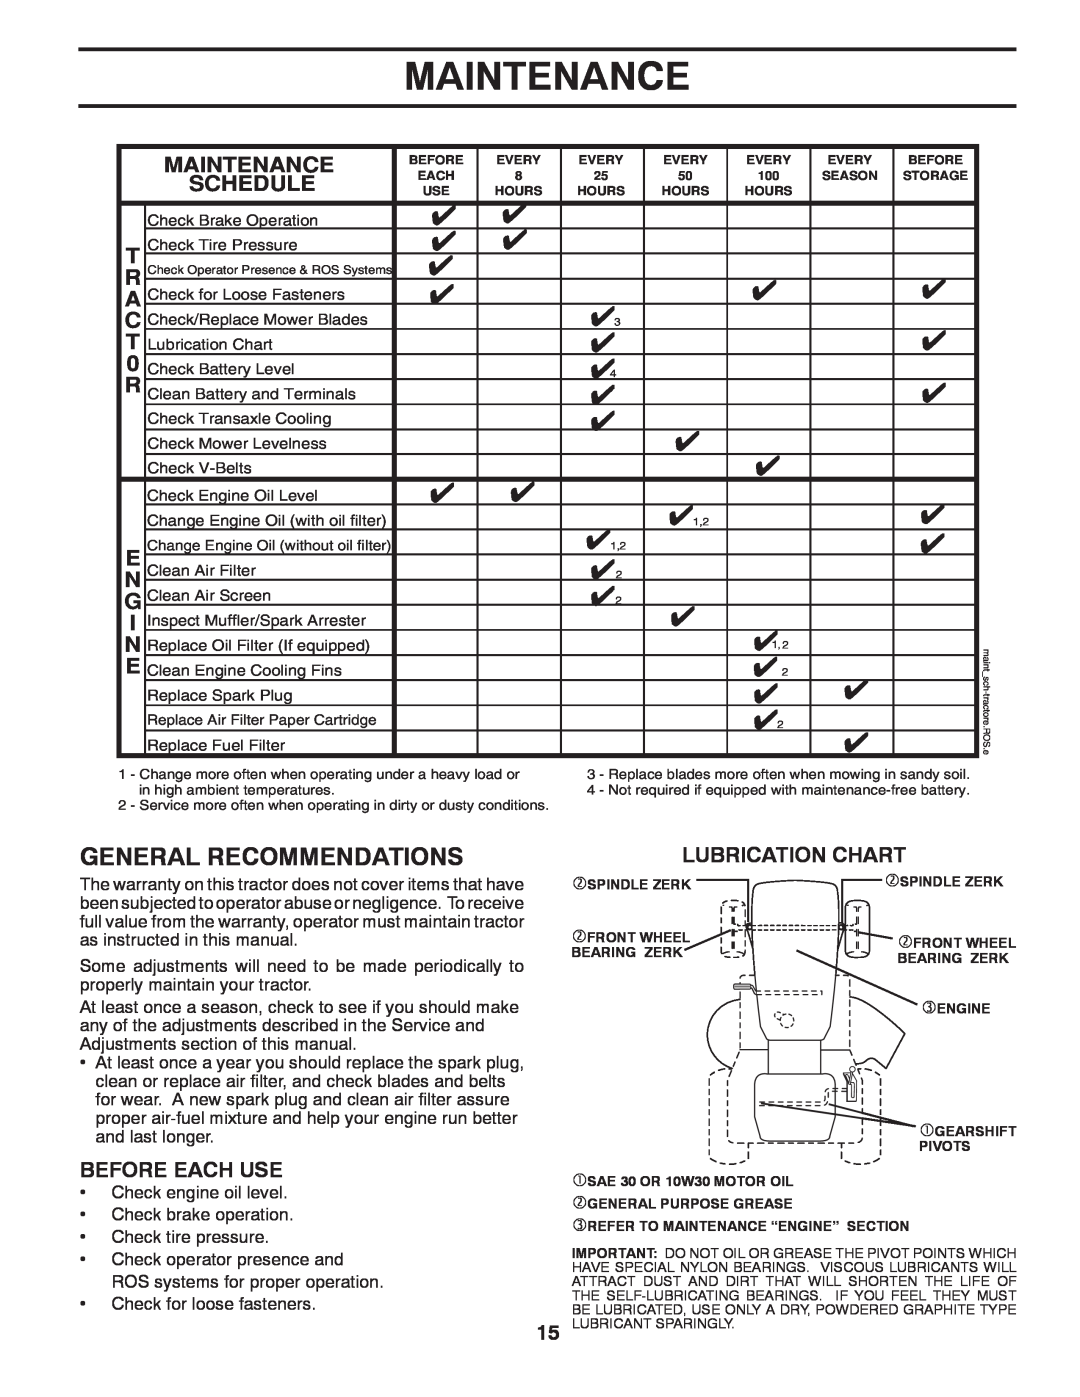 Poulan 425001 manual Maintenance, Lubrication Chart 